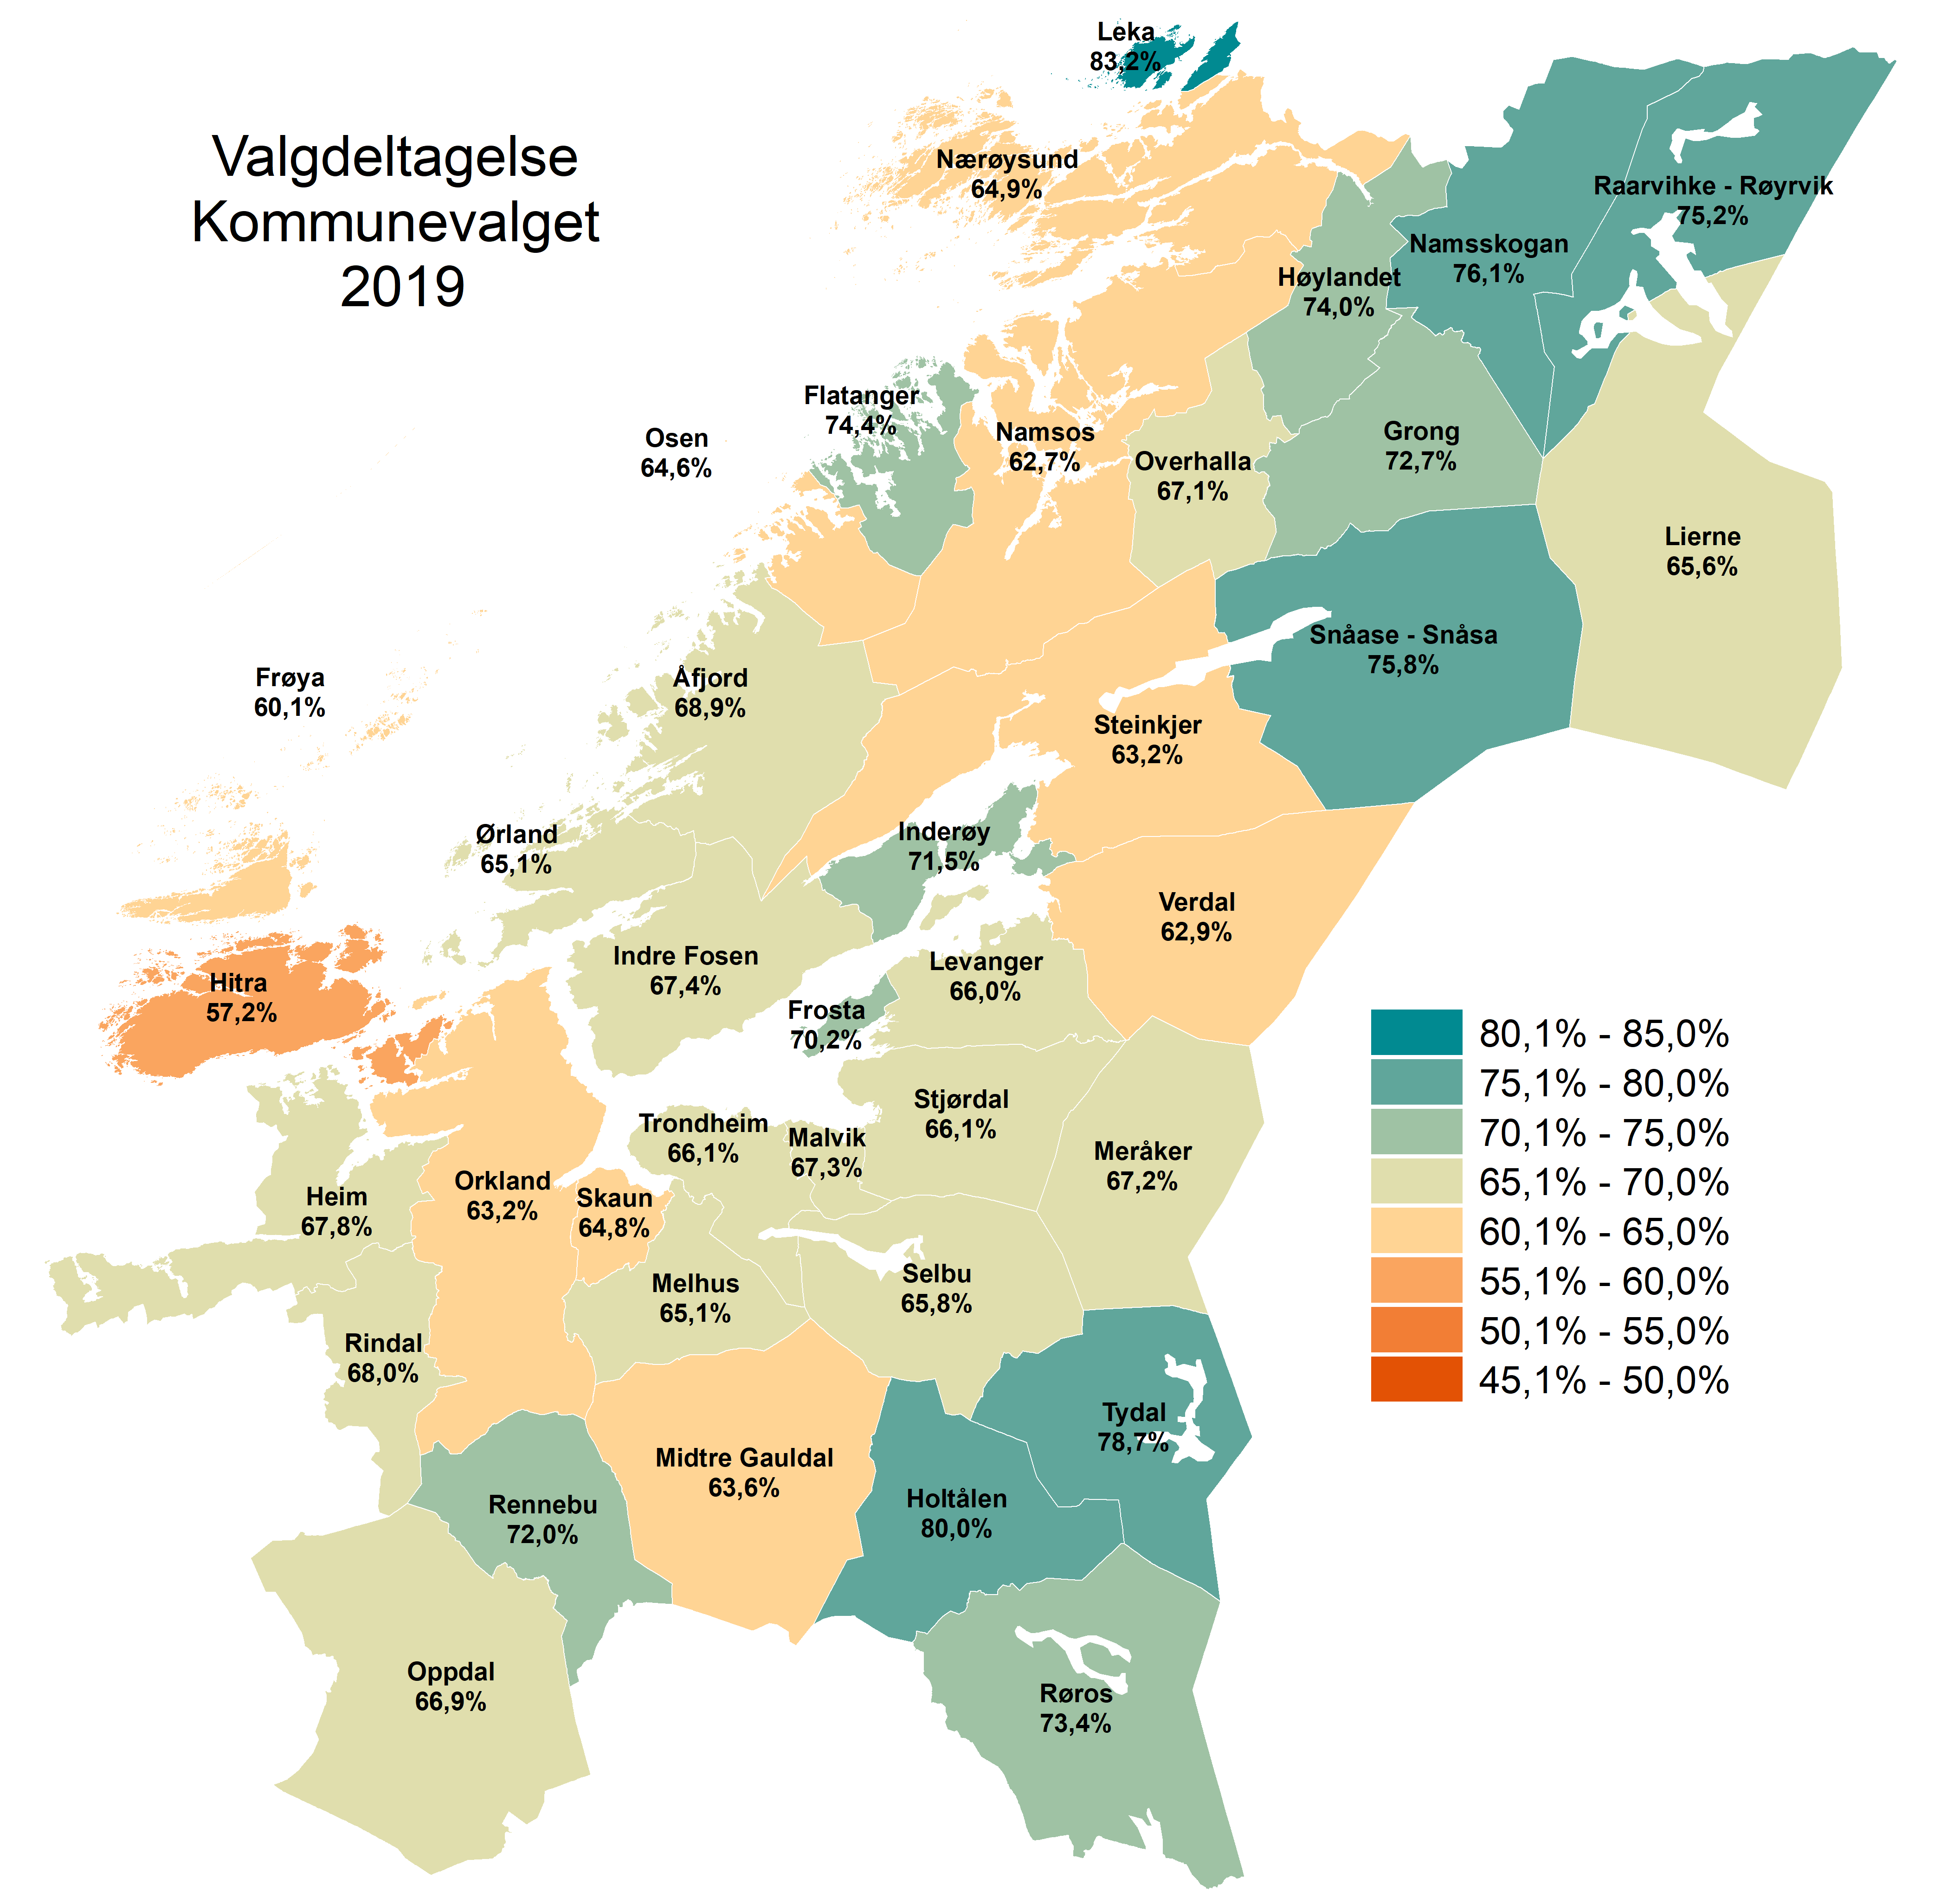 Valgdeltagelse kommunevalg 2019